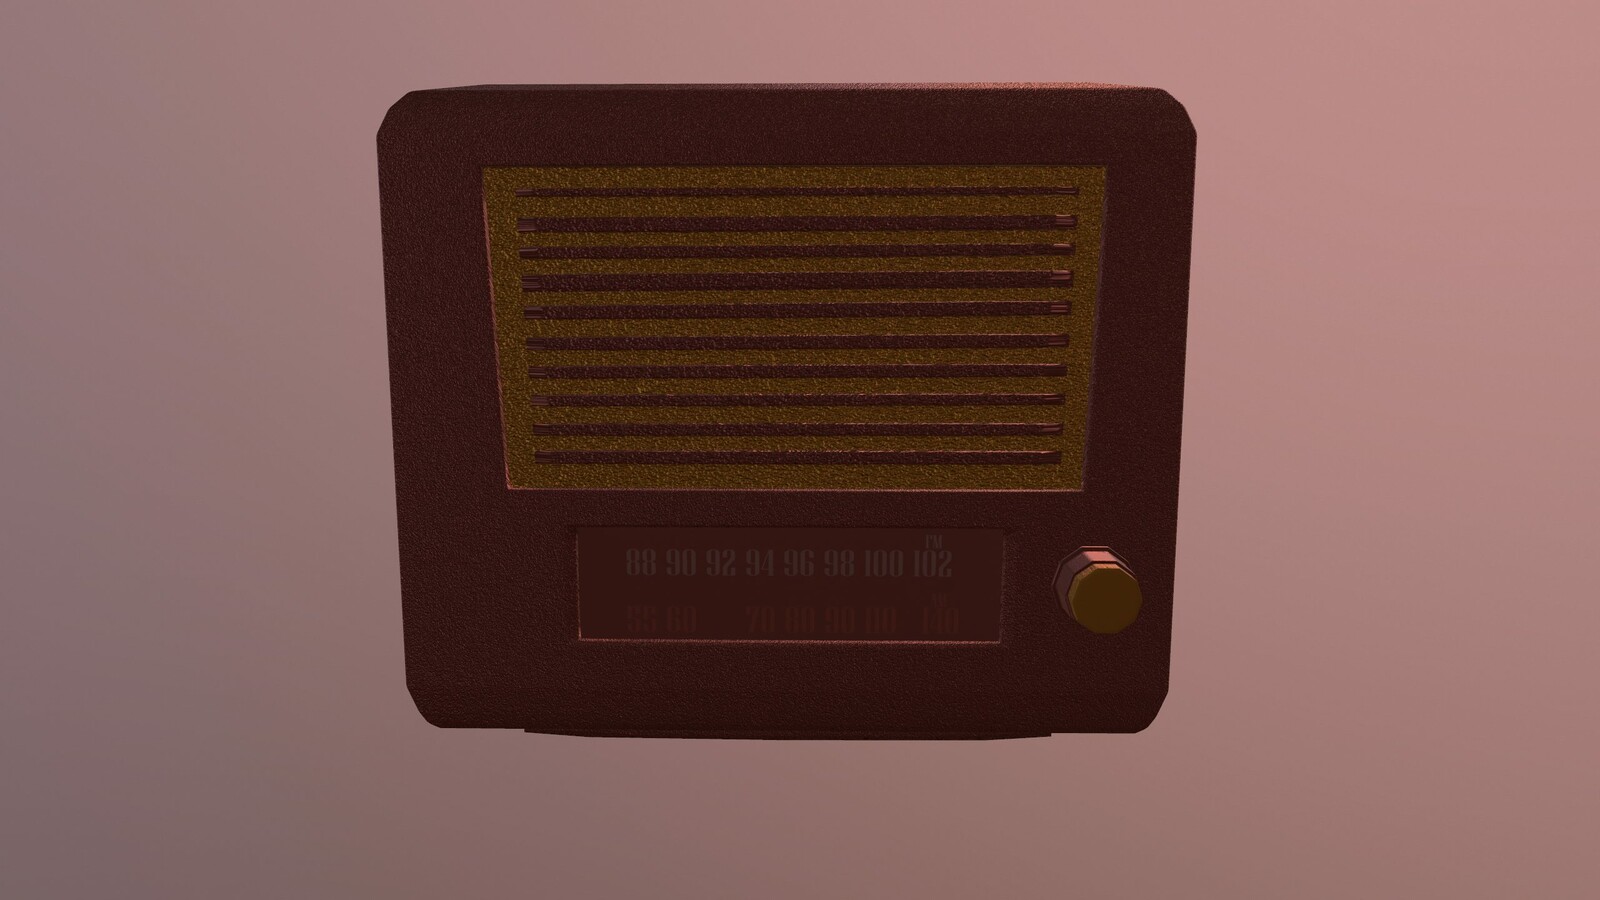 Vintage Radio 